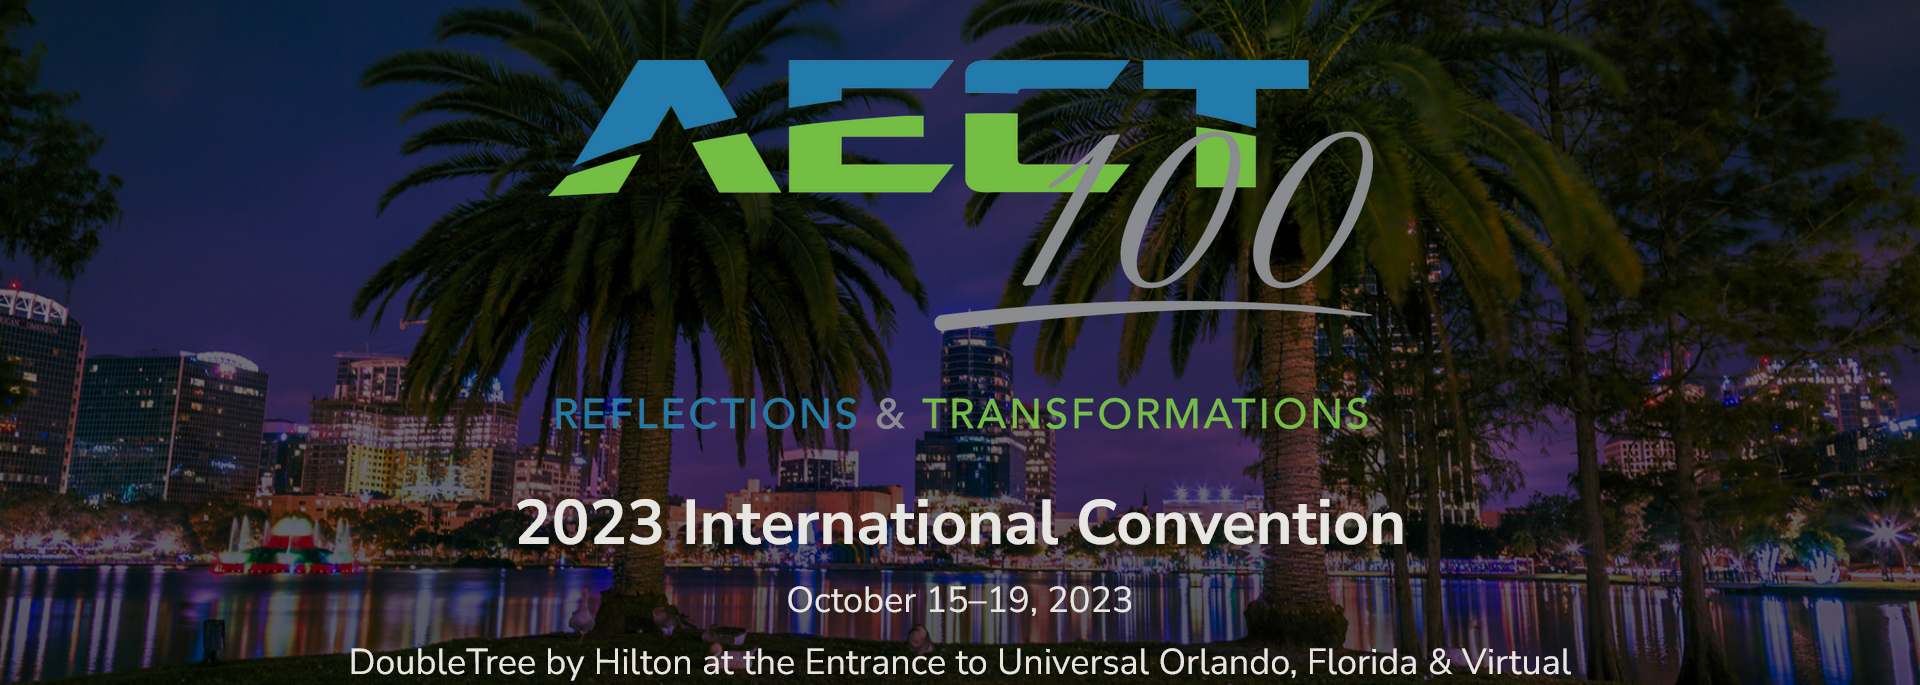 Convention Registration News & Updates 9/22/23